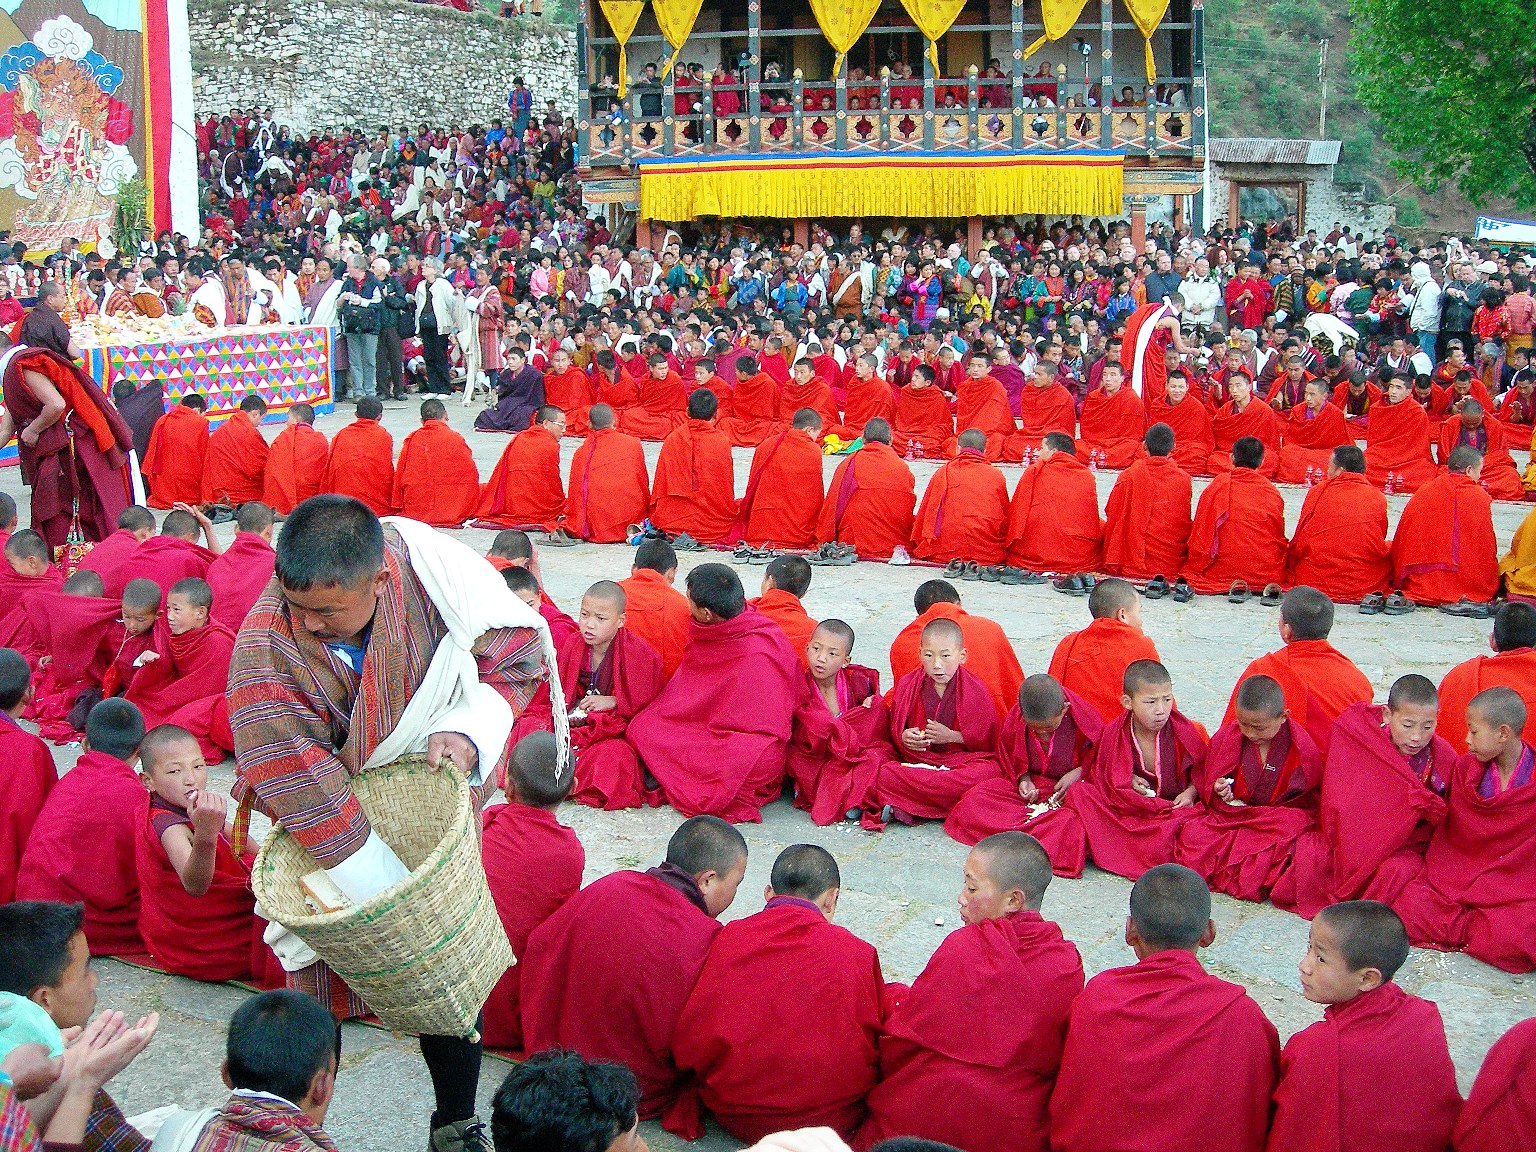 祭りに集まった僧侶たち